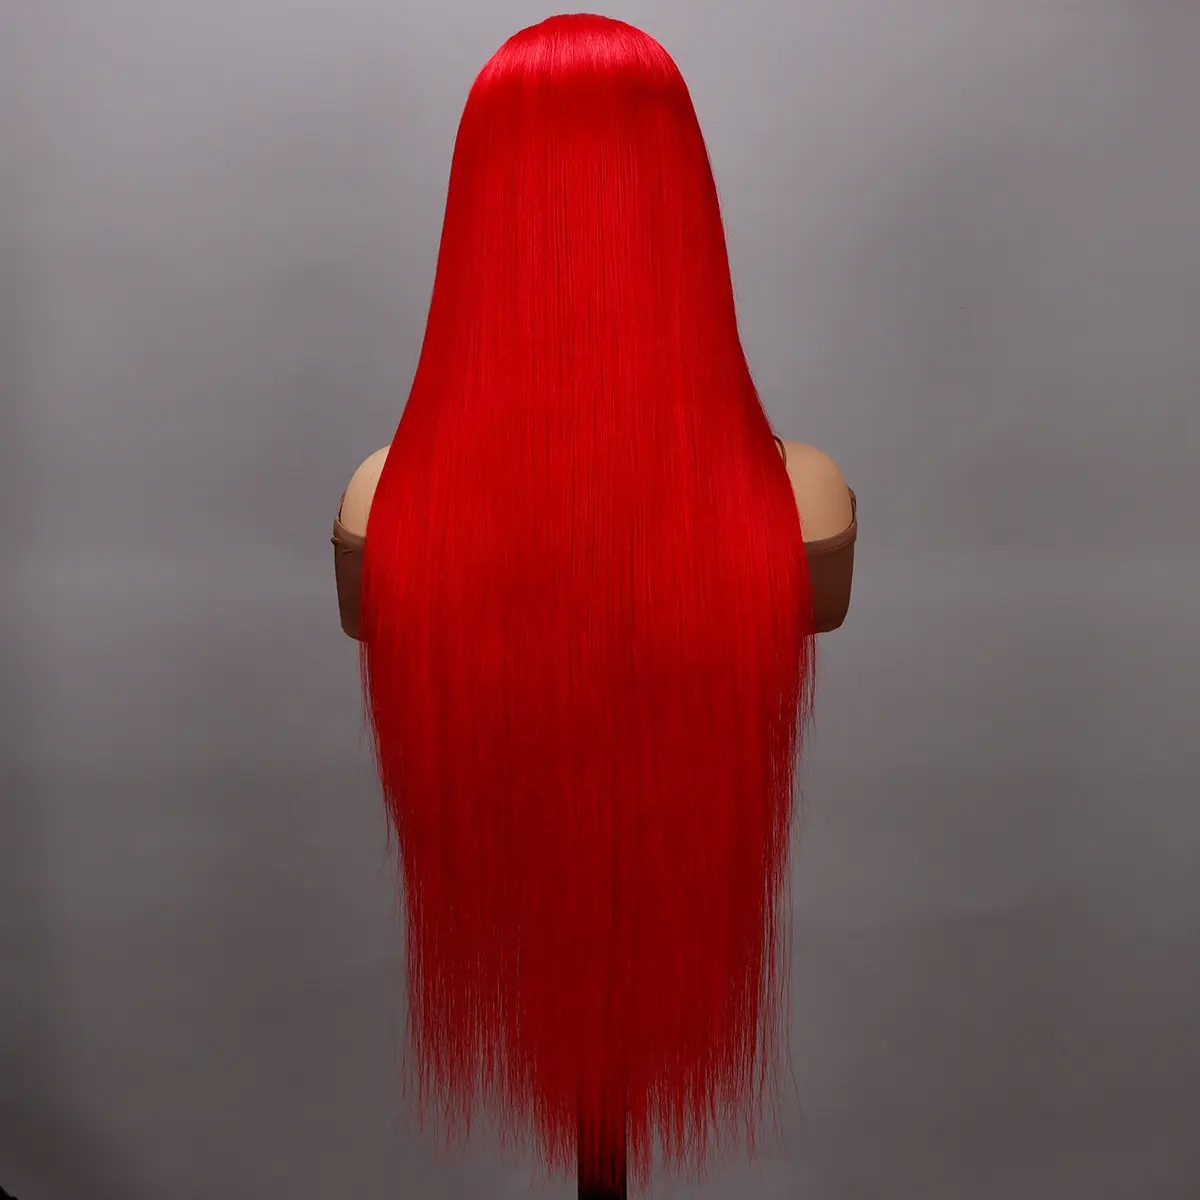 Parrucche rosse capelli umani Hd in pizzo lungo lungo dritto in pizzo indiano grezzo Hd pace frontale donna donna capelli verificato parrucca rossa venditore di capelli